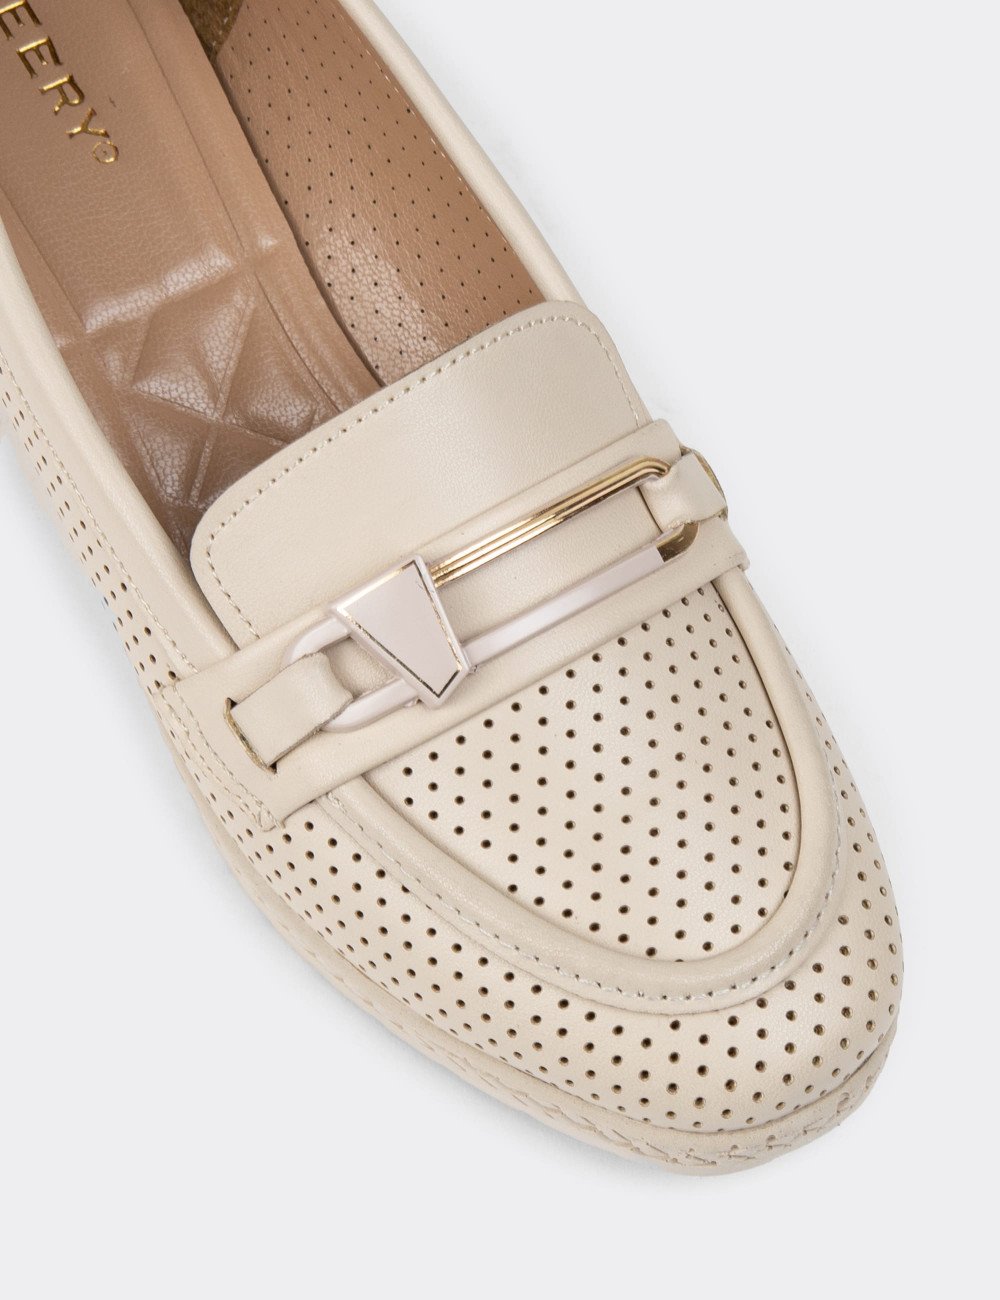 Bej Rengi Kadın Dolgu Topuk Günlük Ayakkabı - K2358ZBEJC01